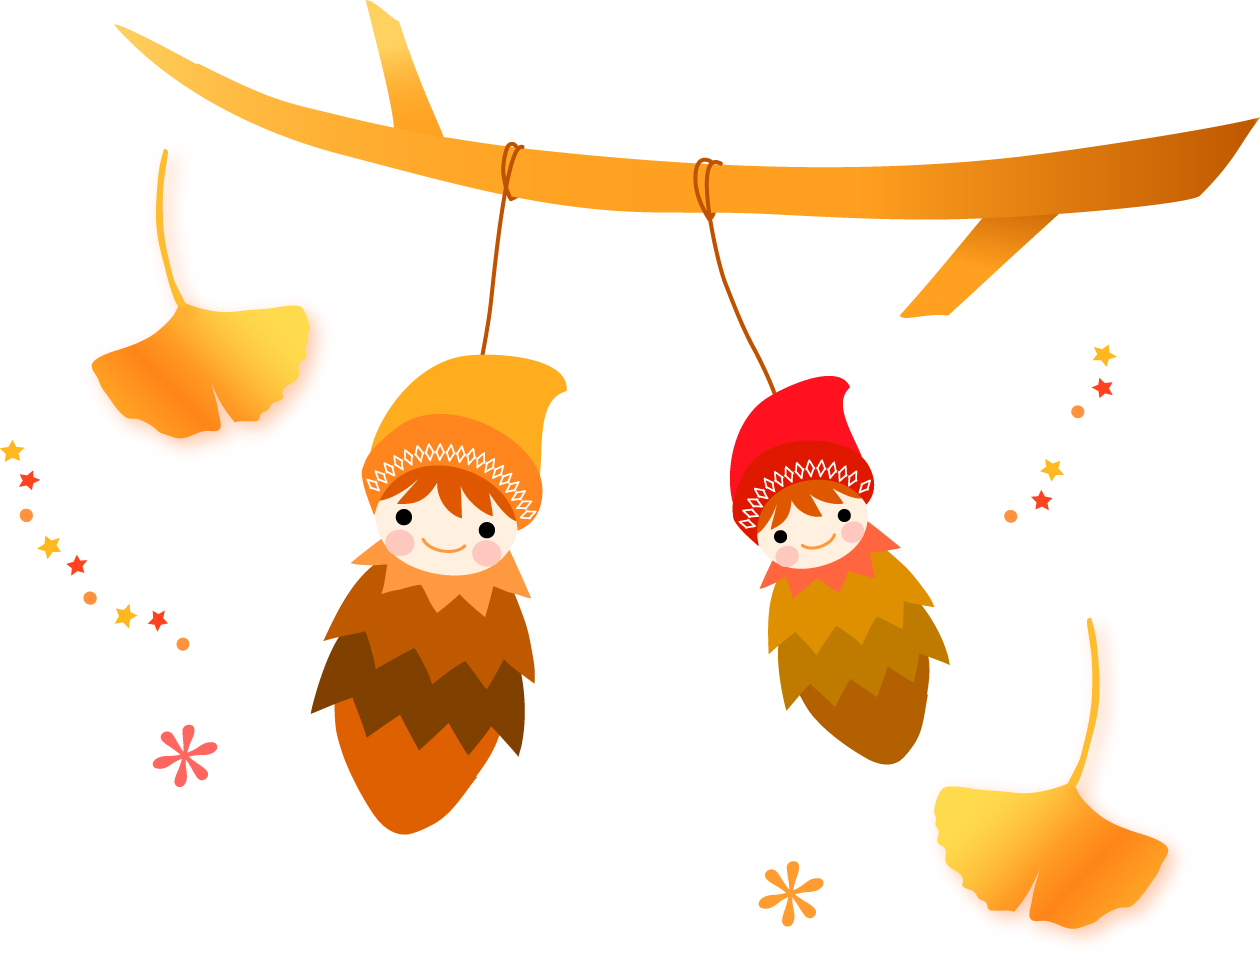 9月19日 自然の枝や実を使って可愛い妖精たちを作ろう 大津市のびわこ文化公園で 森のようせい作り が開催 滋賀のママがイベント 育児 遊び 学びを発信 シガマンマ ピースマム